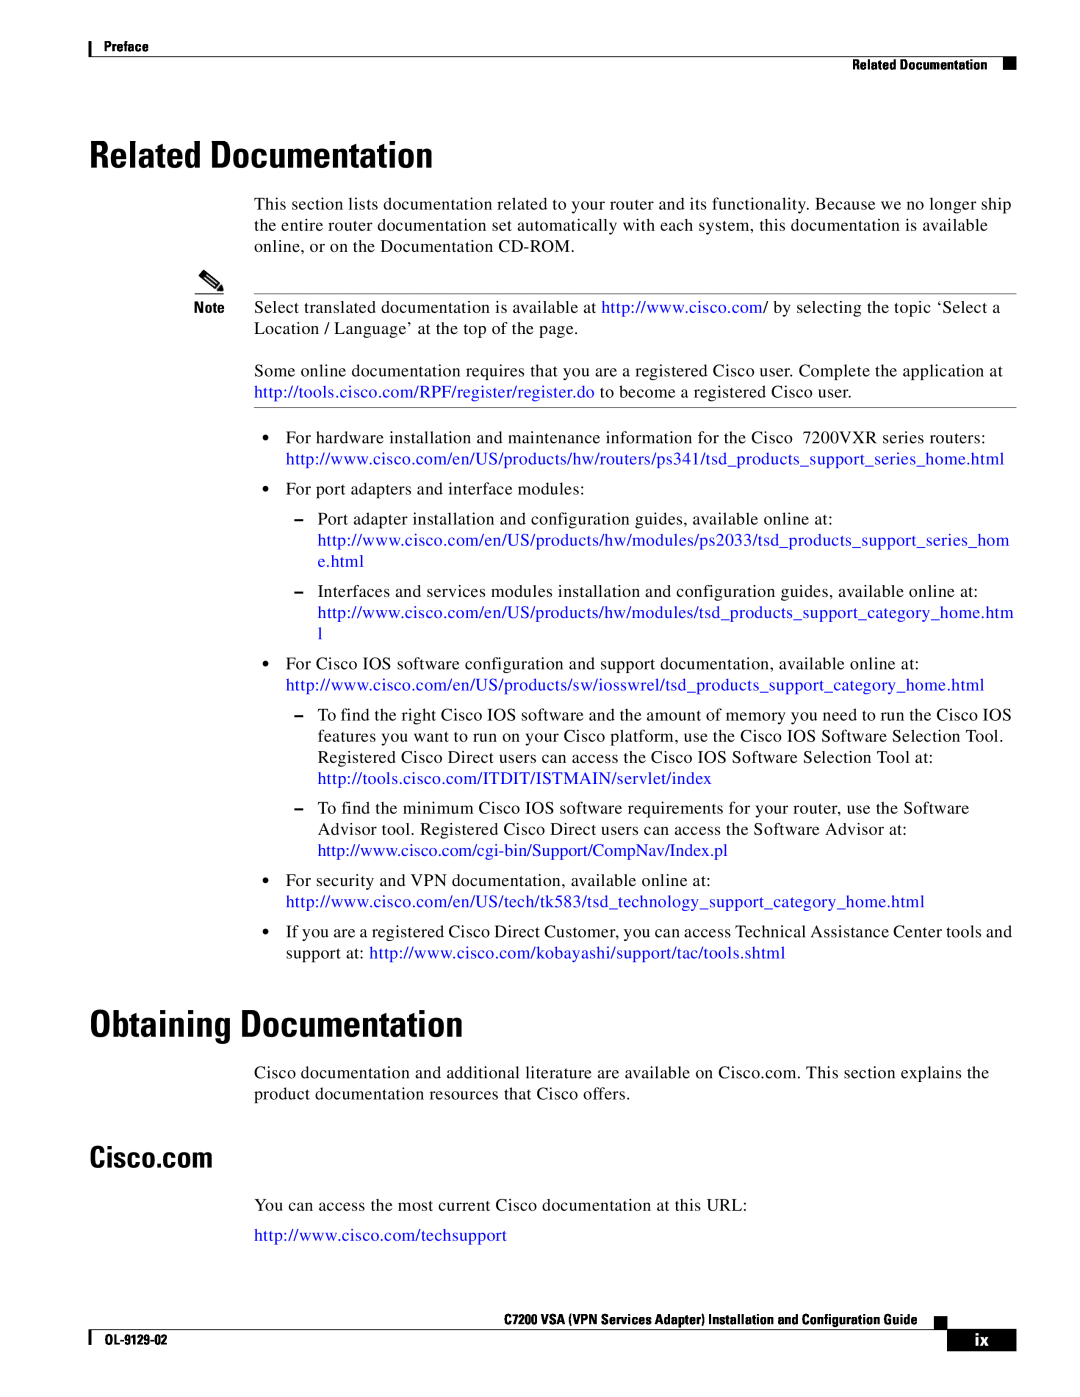 Cisco Systems C7200 manual Related Documentation, Obtaining Documentation, Cisco.com 